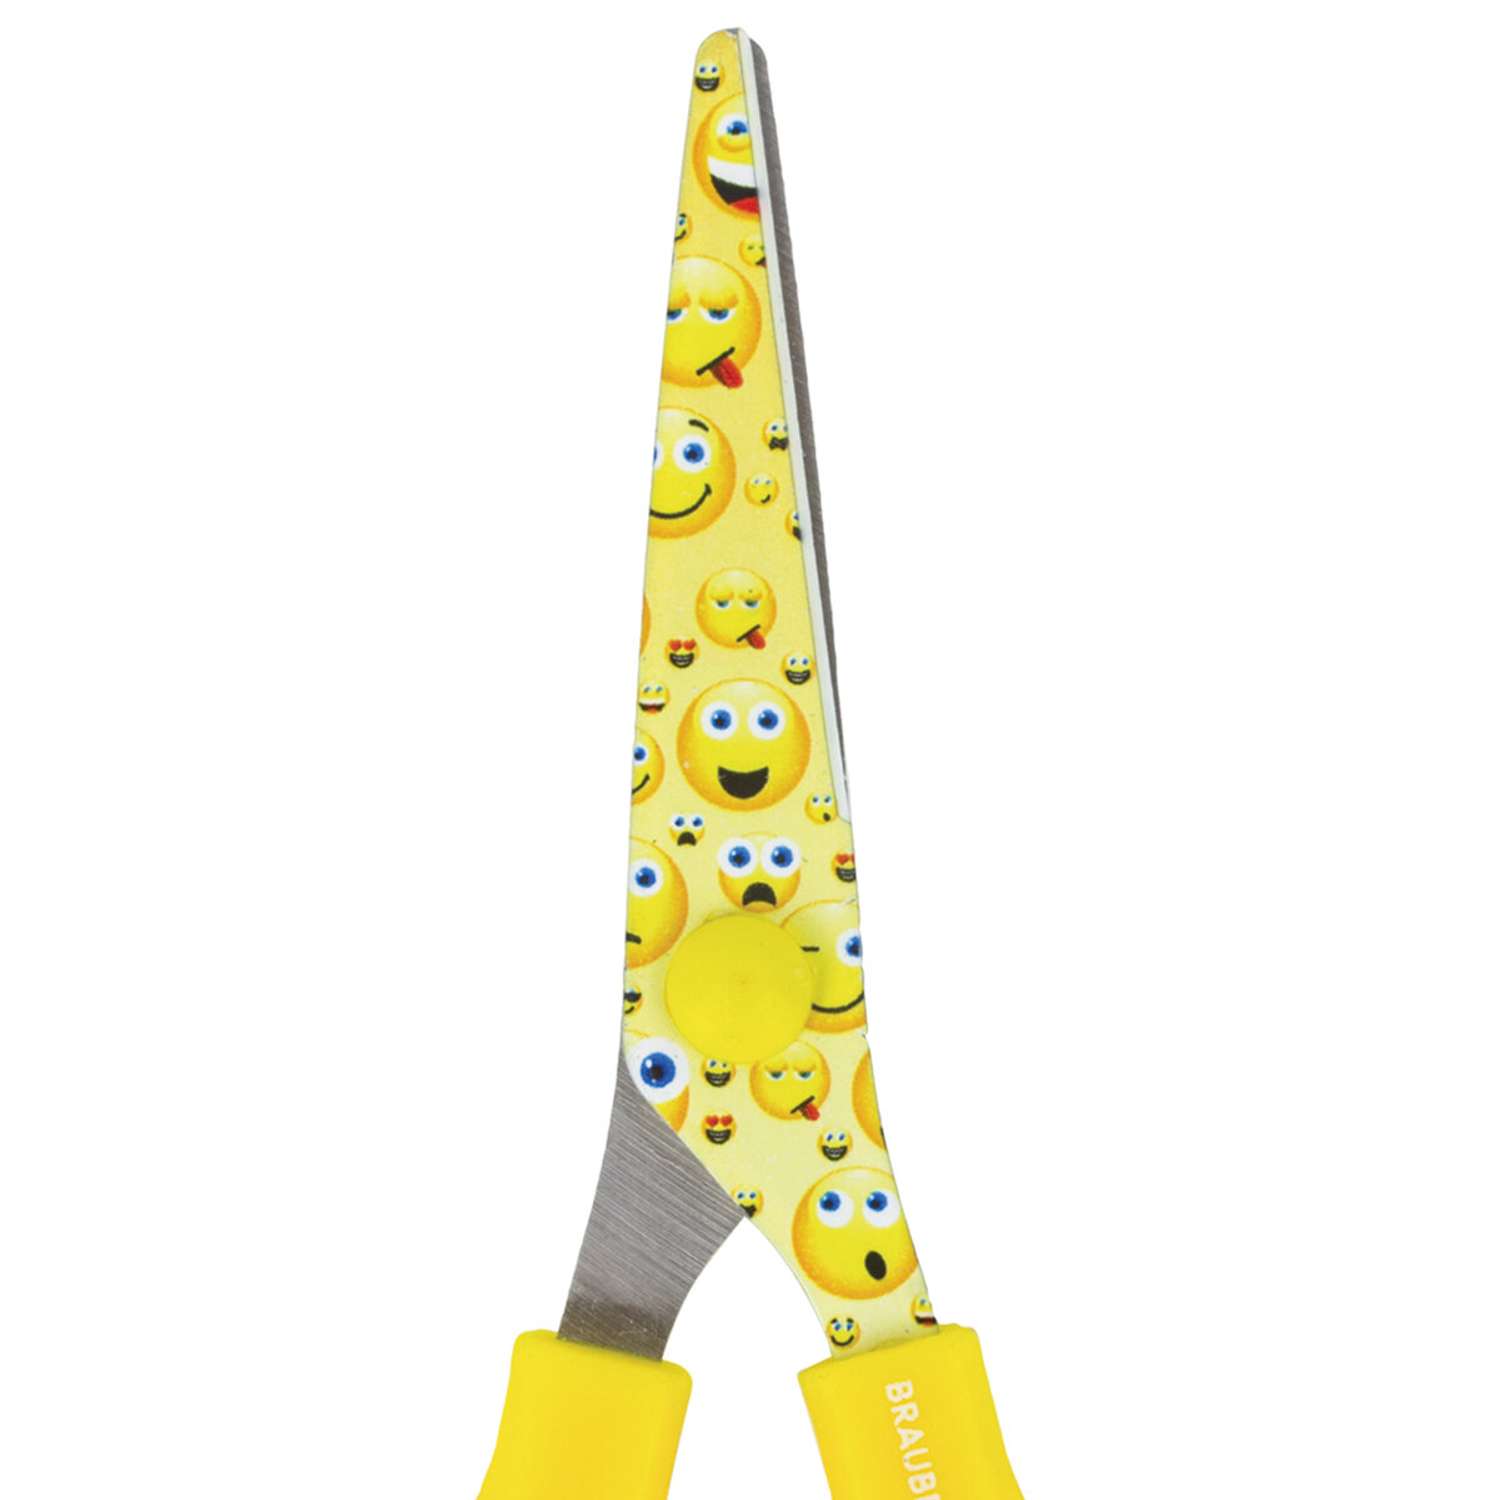 Ножницы Brauberg Kid Series 130мм с цветной печатью Смайлики желто-белые - фото 4